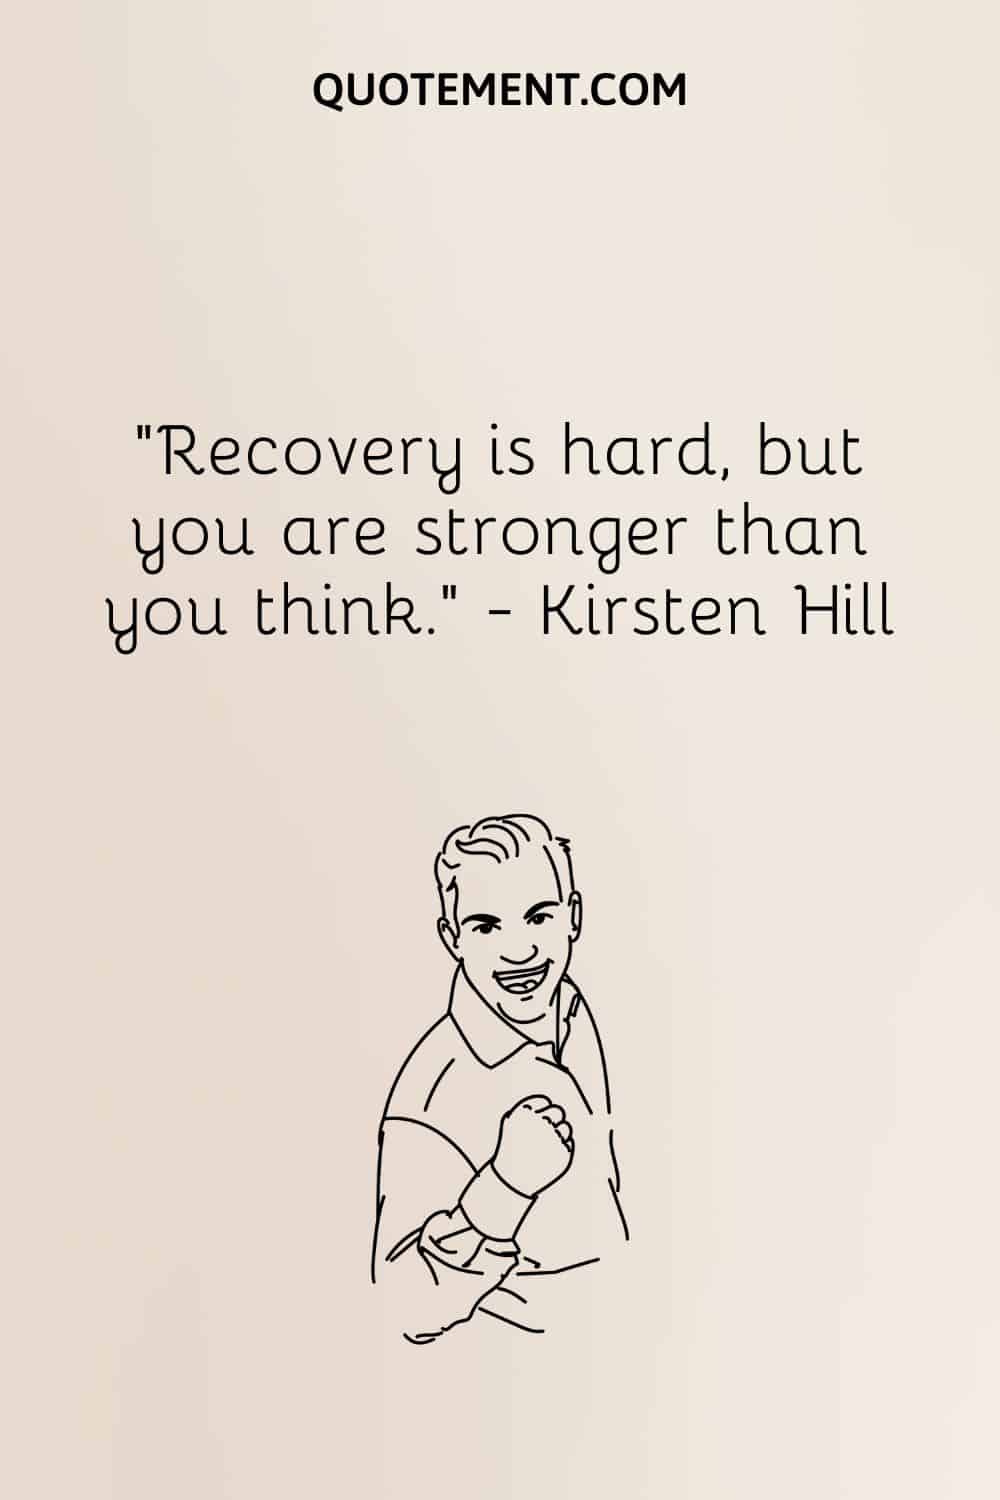 La recuperación es dura, pero eres más fuerte de lo que crees